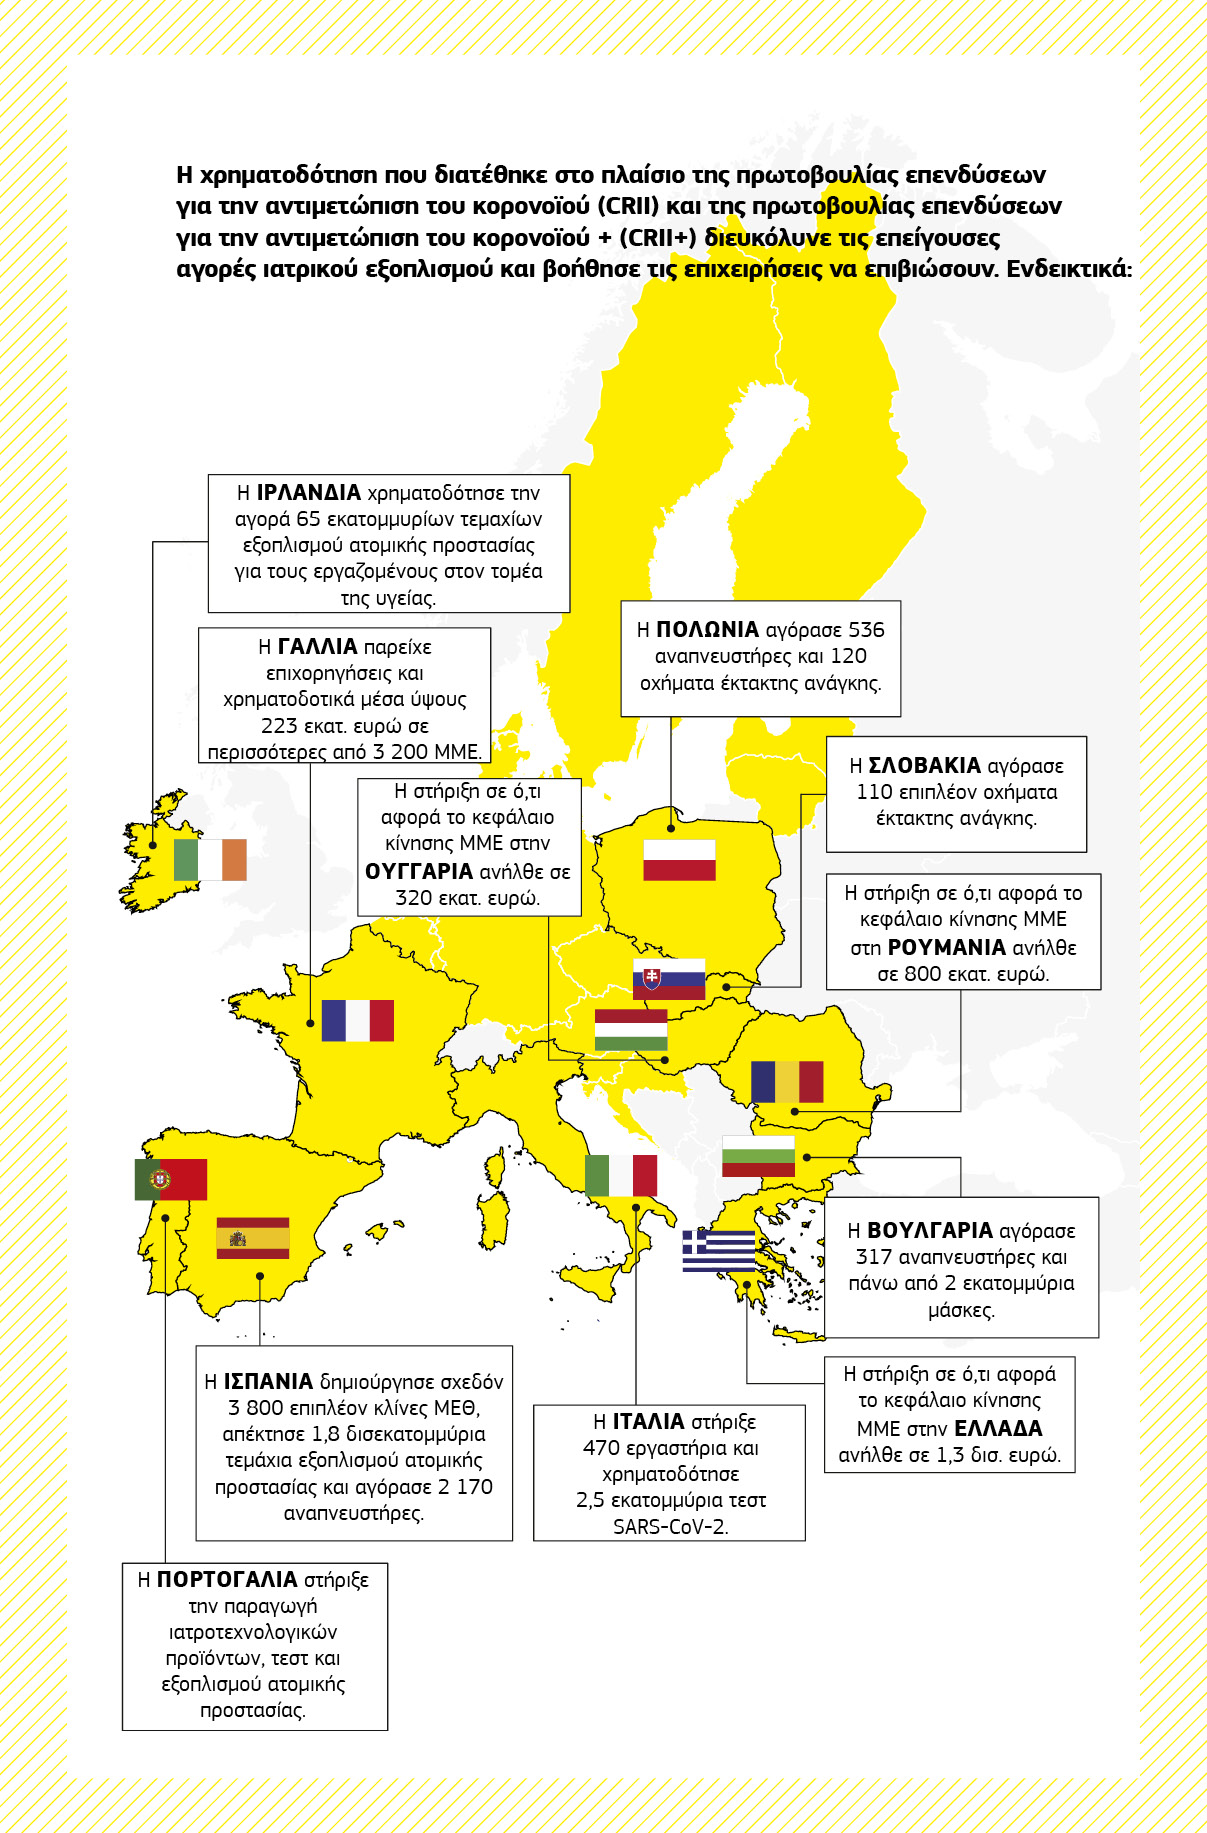 Χάρτης που δείχνει συνοπτικά μια σειρά από έργα στήριξης για την αντιμετώπιση της πανδημίας τα οποία χρηματοδοτούνται από την πρωτοβουλία επενδύσεων για την αντιμετώπιση του κορονοϊού και την πρωτοβουλία επενδύσεων για την αντιμετώπιση του κορονοϊού πλας σε διάφορα κράτη μέλη της Ευρωπαϊκής Ένωσης.